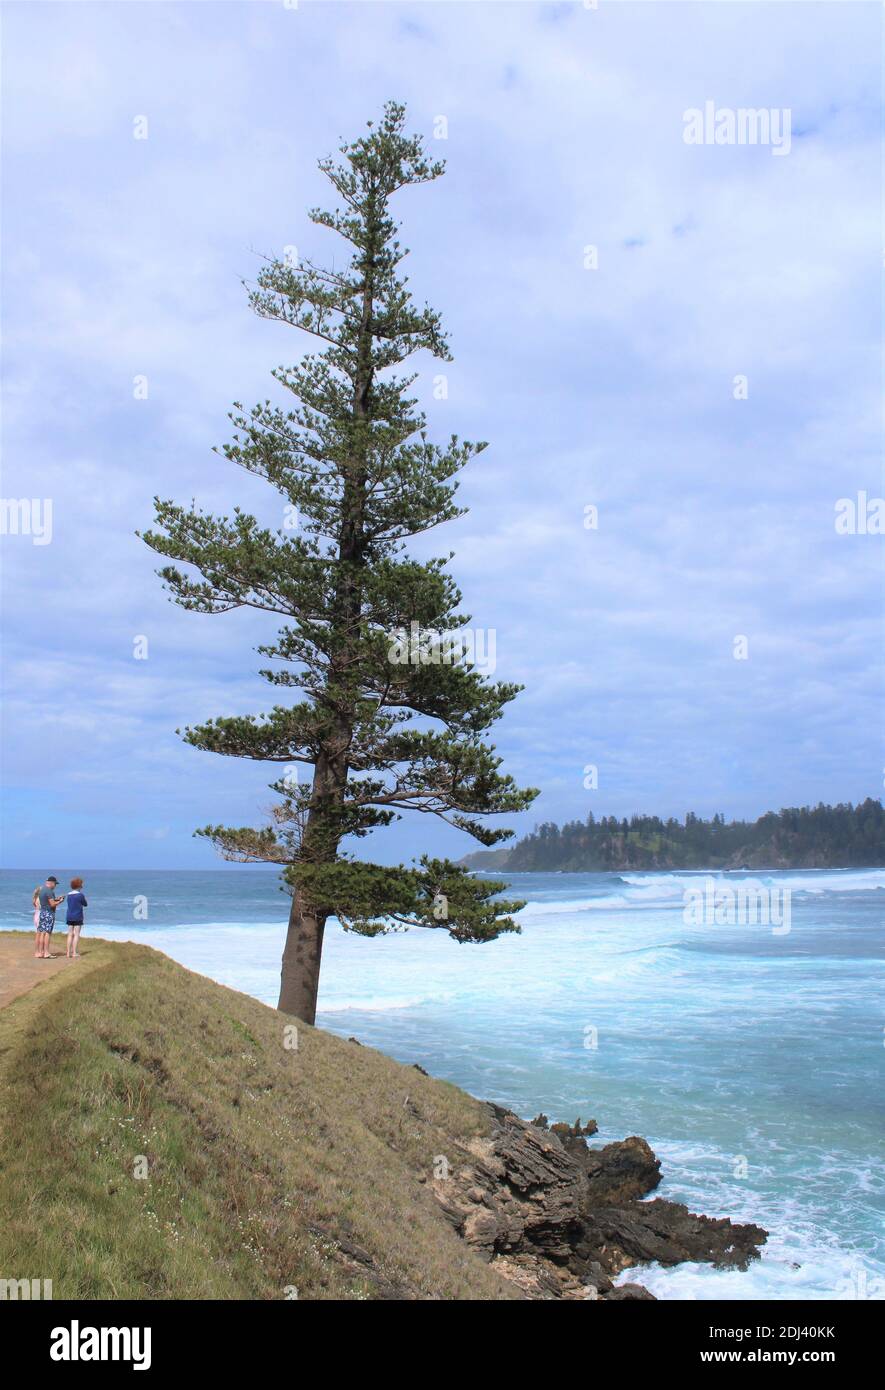 Île Norfolk. Lone Pine, un ancien pin endémique de l'île Norfolk (Araucaria heterophylla) à point Hunter. Famille australienne explorant le plein air. Banque D'Images